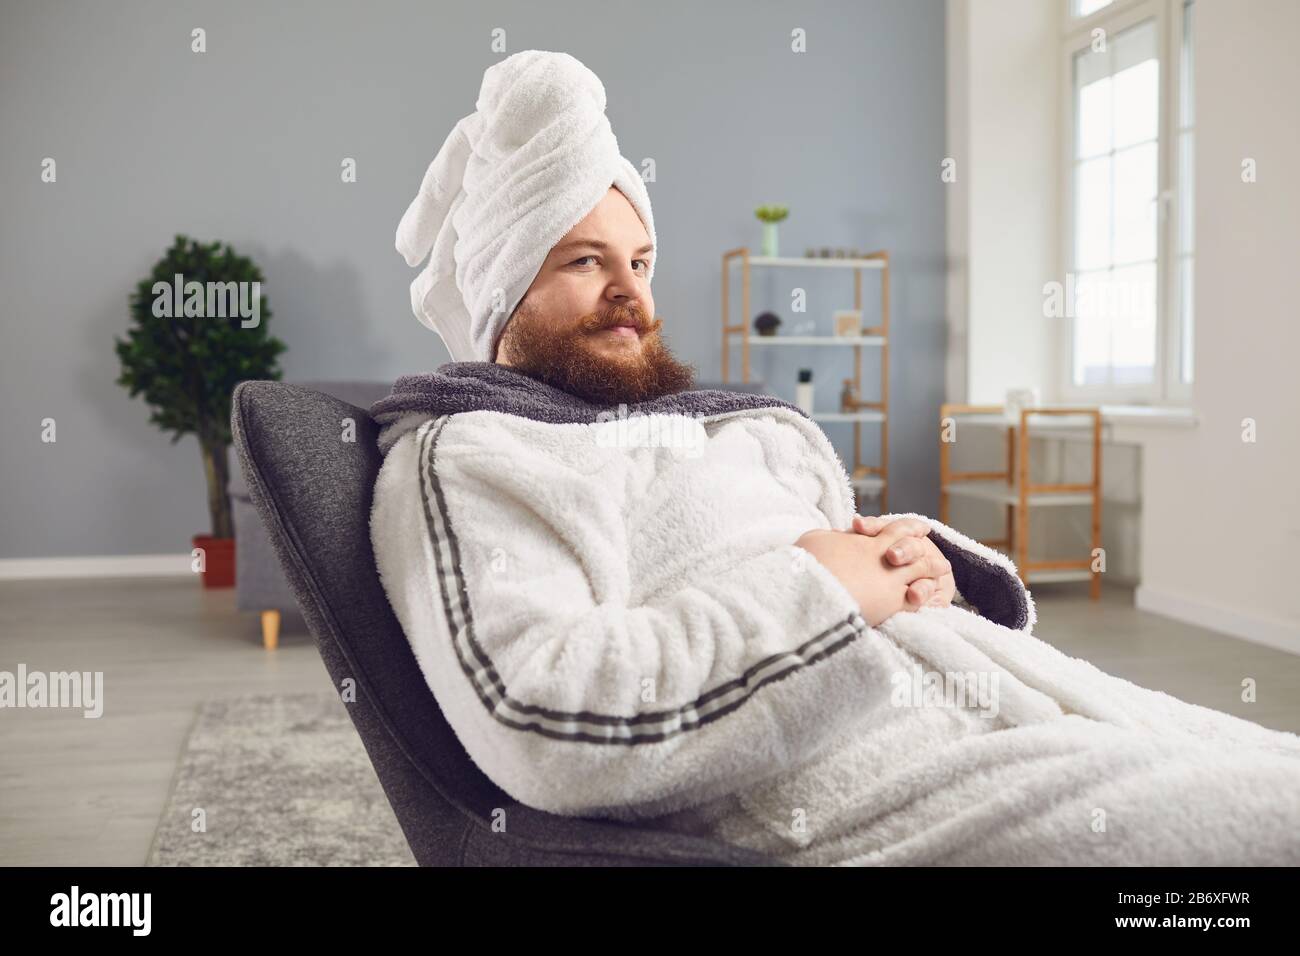 Un homme étrange et drôle barbu dans un peignoir fait des soins au spa sur son visage repose dans une chambre Banque D'Images